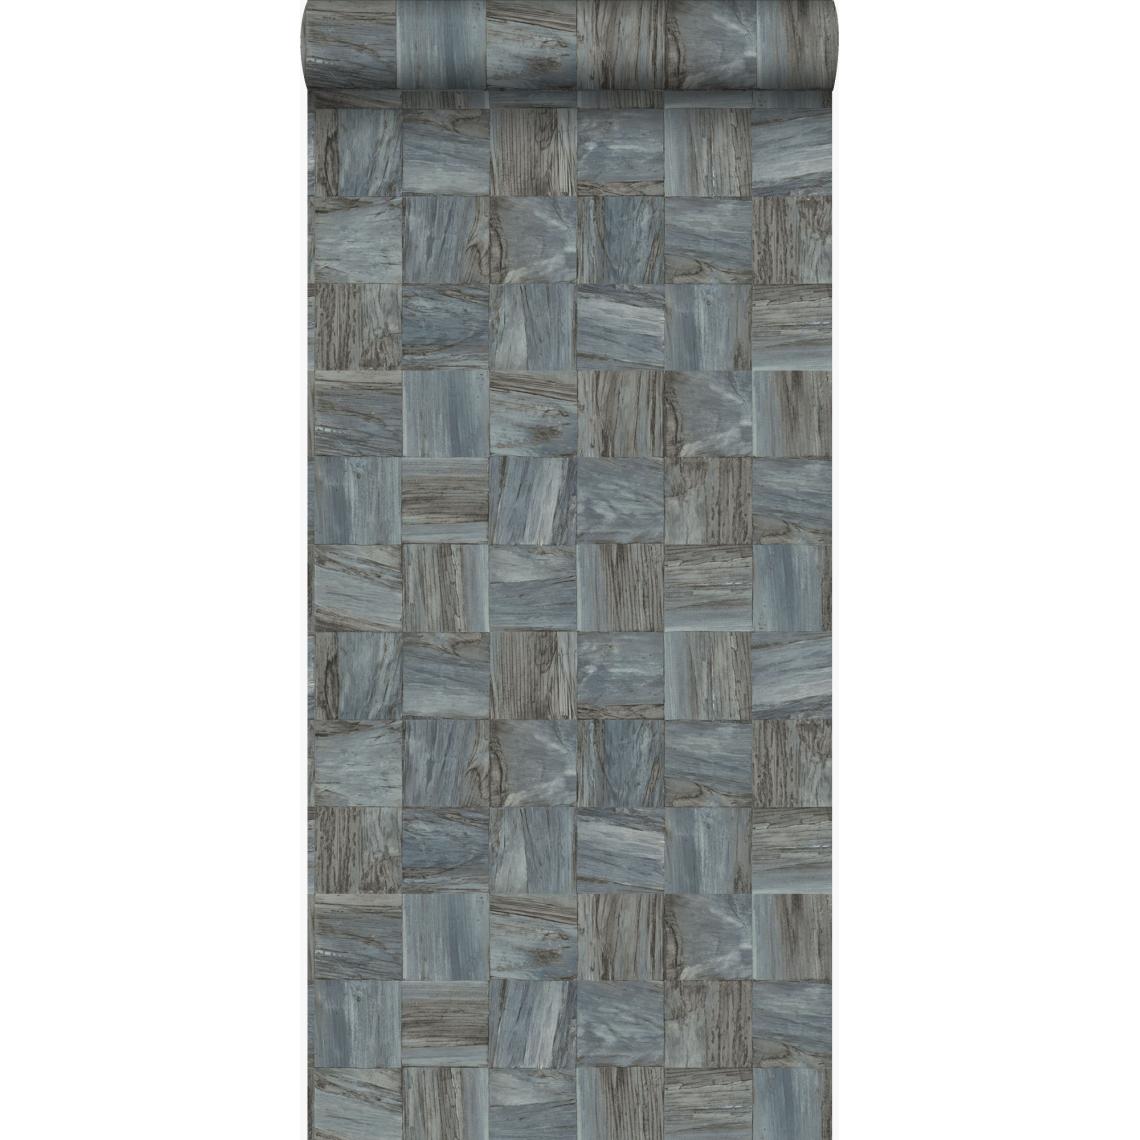 Origin - Origin PP intissé éco texture morceaux carrés de déchets de bois gris pâle - 347514 - 53 cm x 10.05 m - Papier peint